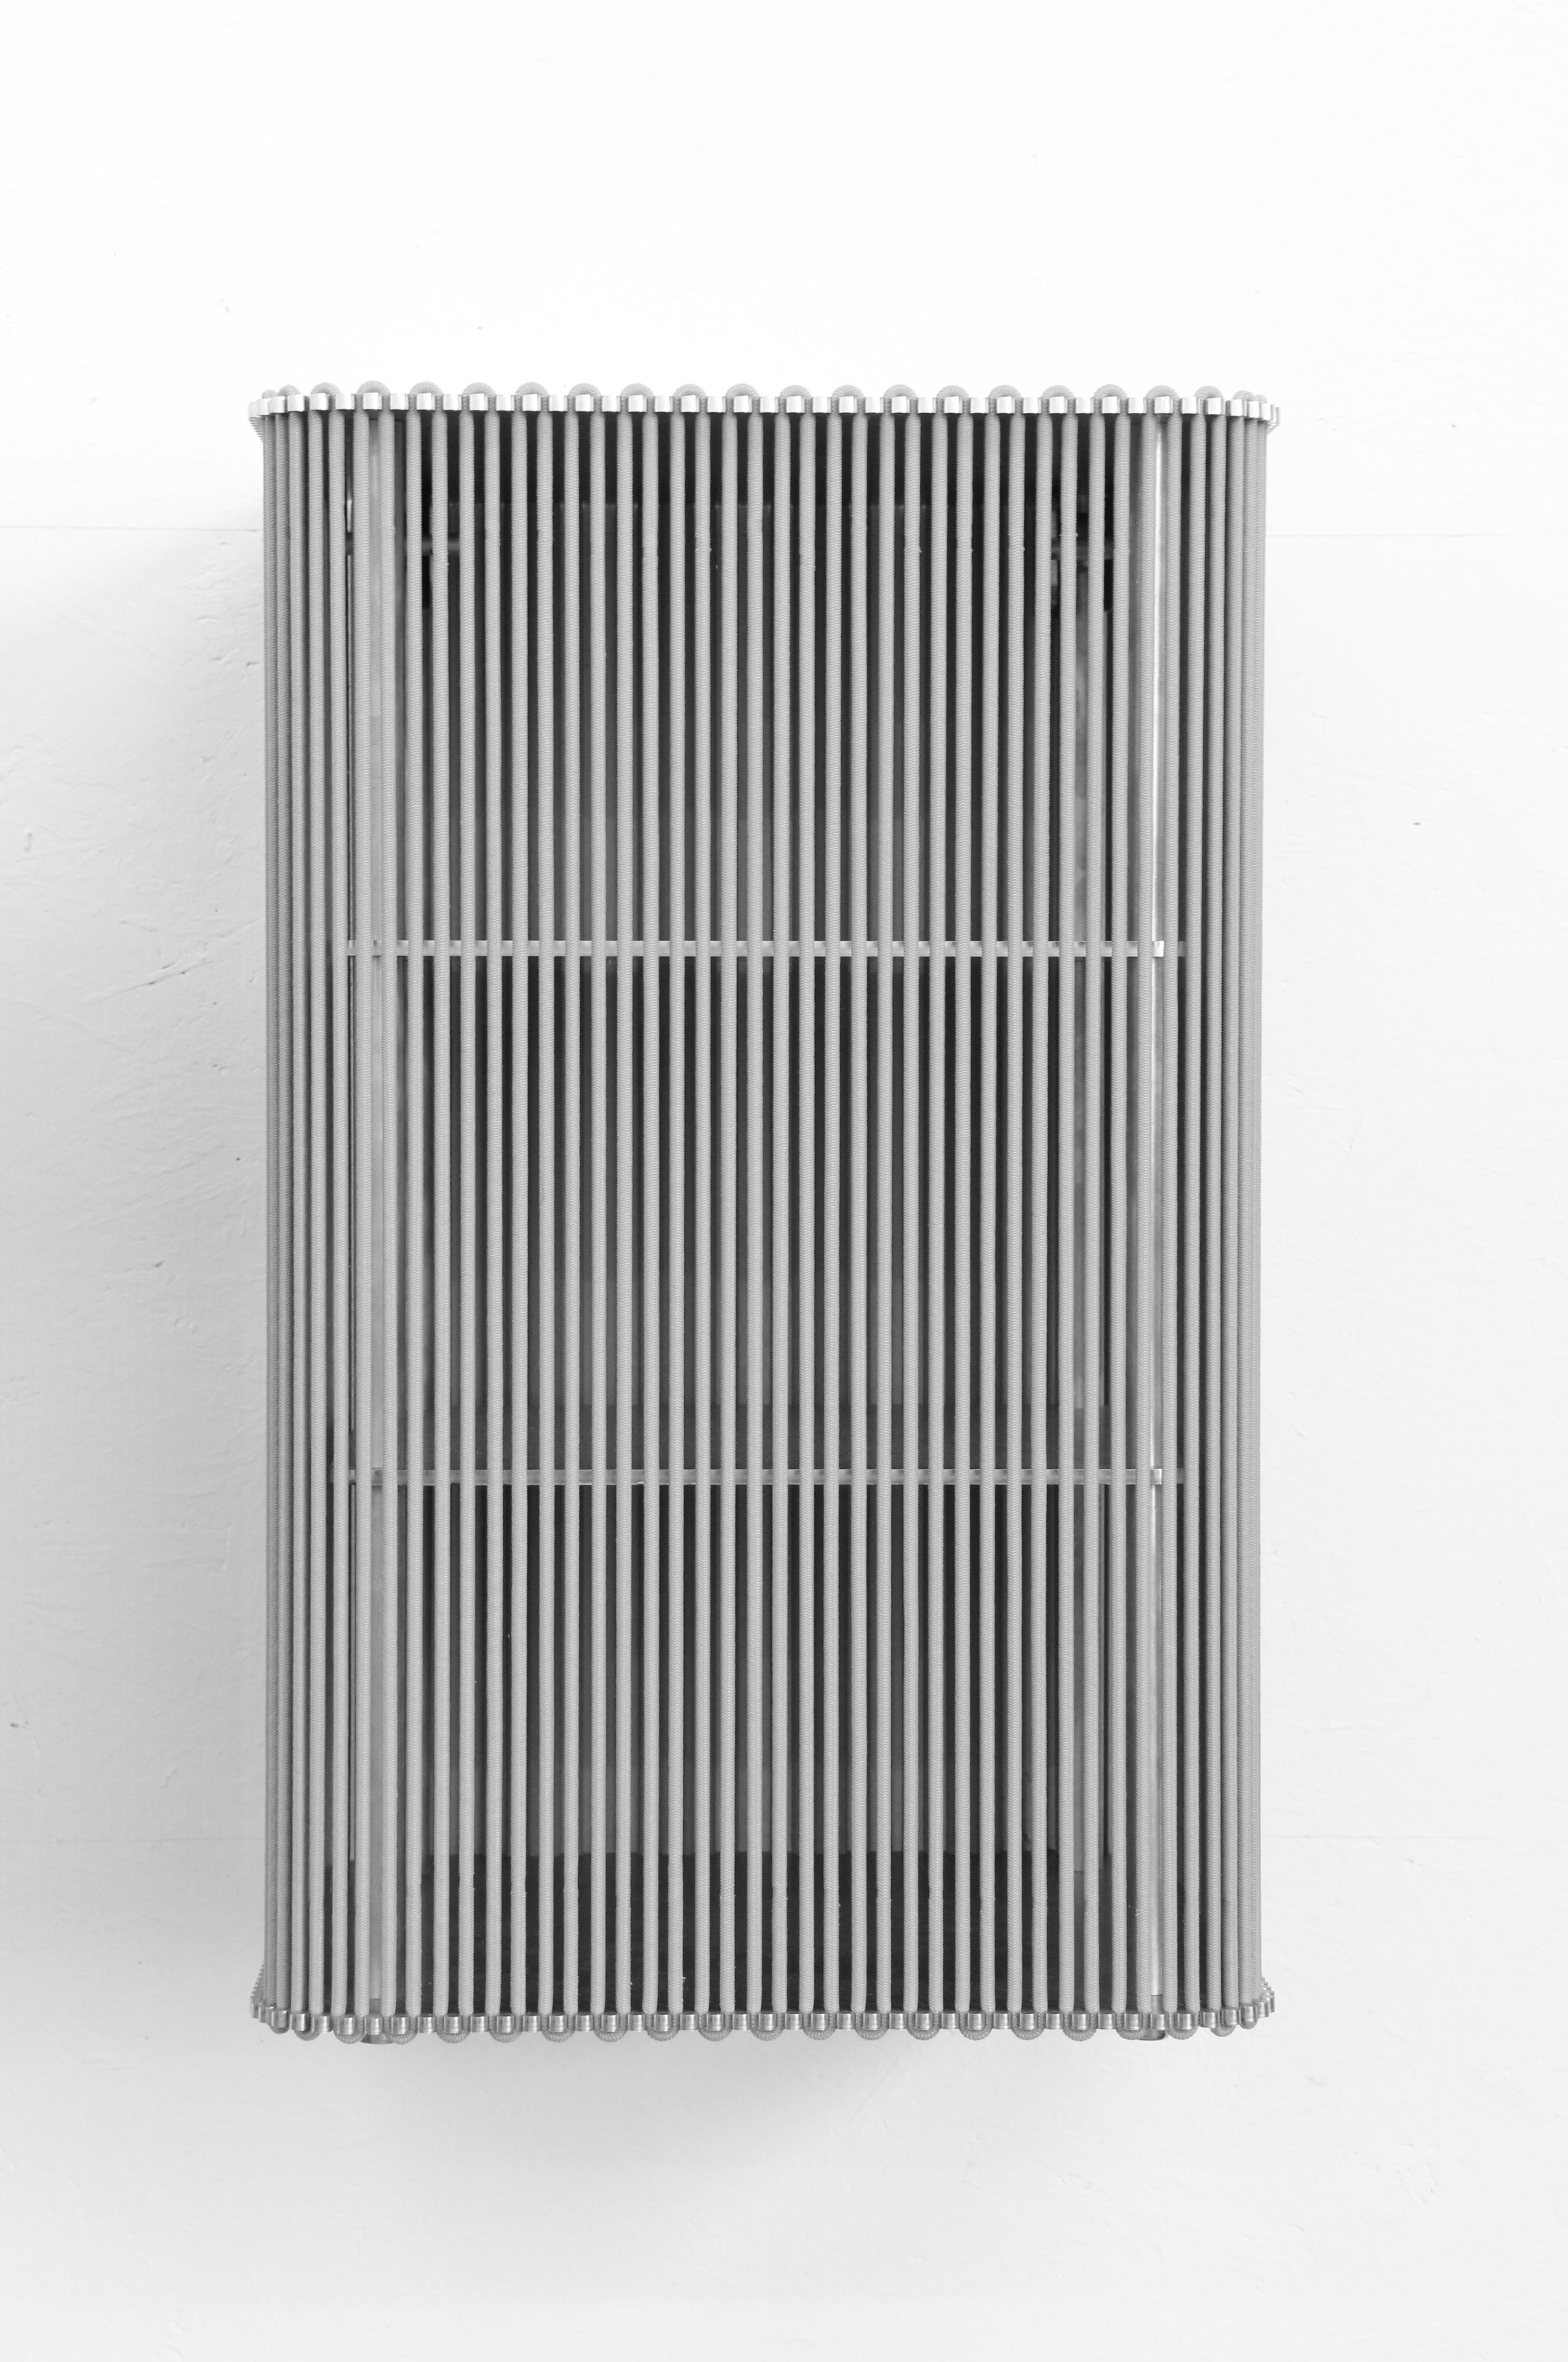 Coil square cabinet wall mounted/ side table by Bram Kerkhofs
Dimensions : D 40 x L 40 x H 75,2cm
Matériaux : Acier inoxydable, aluminium, corde élastique (caoutchouc naturel, polyéthylène).

D'autres dimensions sont disponibles.

COIL est un